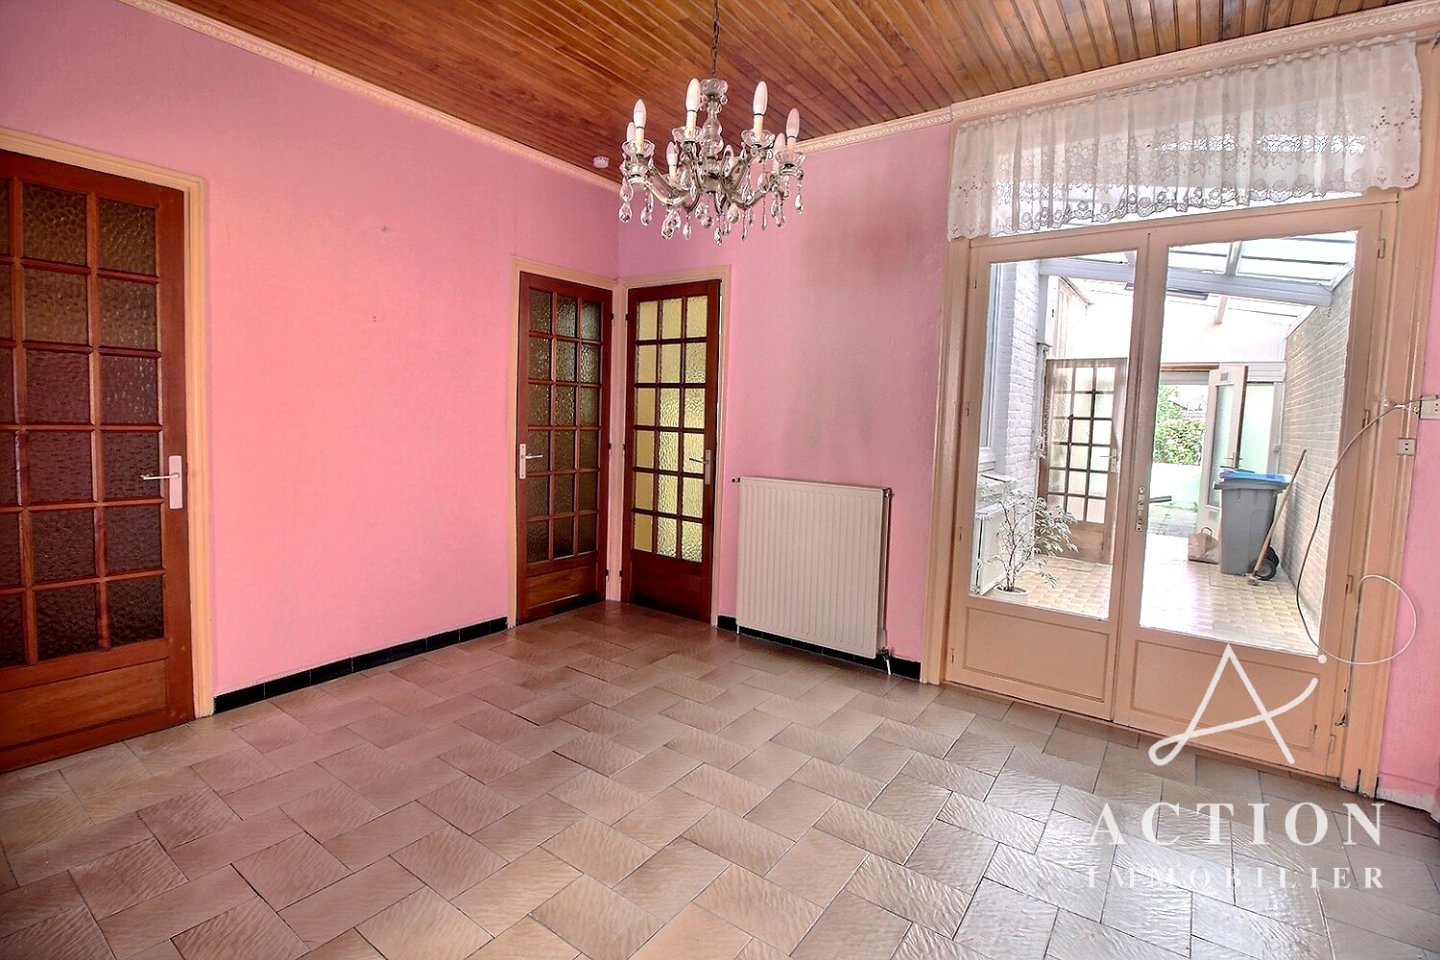 maison 3 chambres jardin A VENDRE - LOMME - 99,27 m2 - 205 900 €